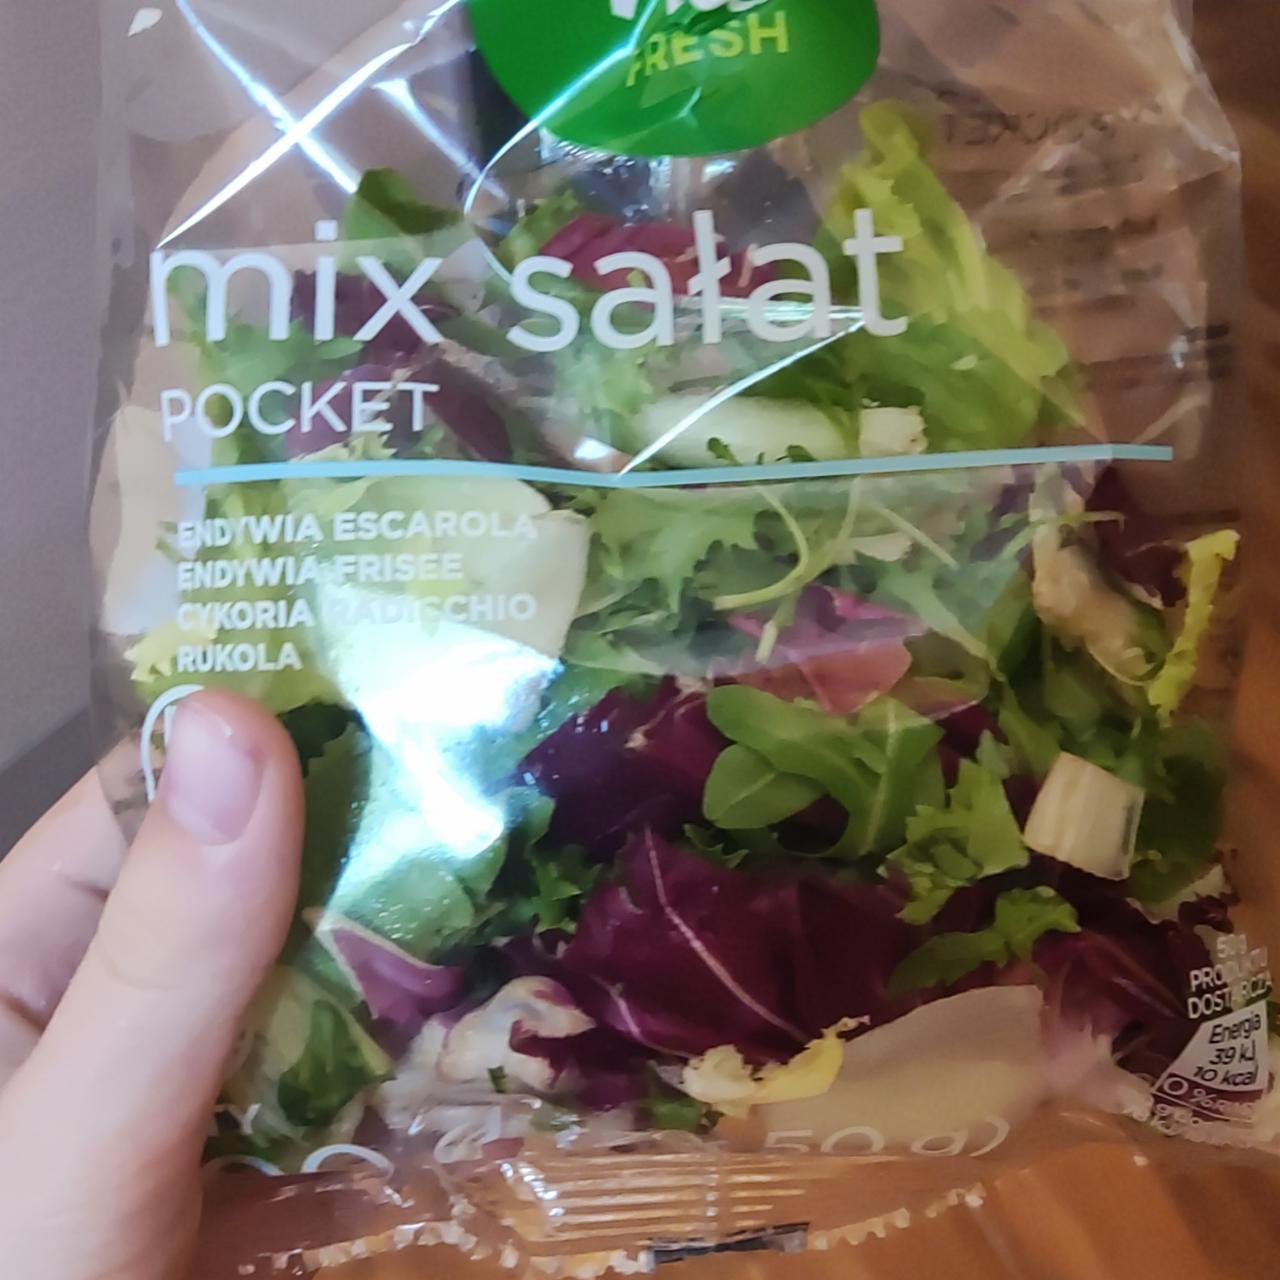 Фото - Микс салатов Mix Salat Pocket Vital Fresh